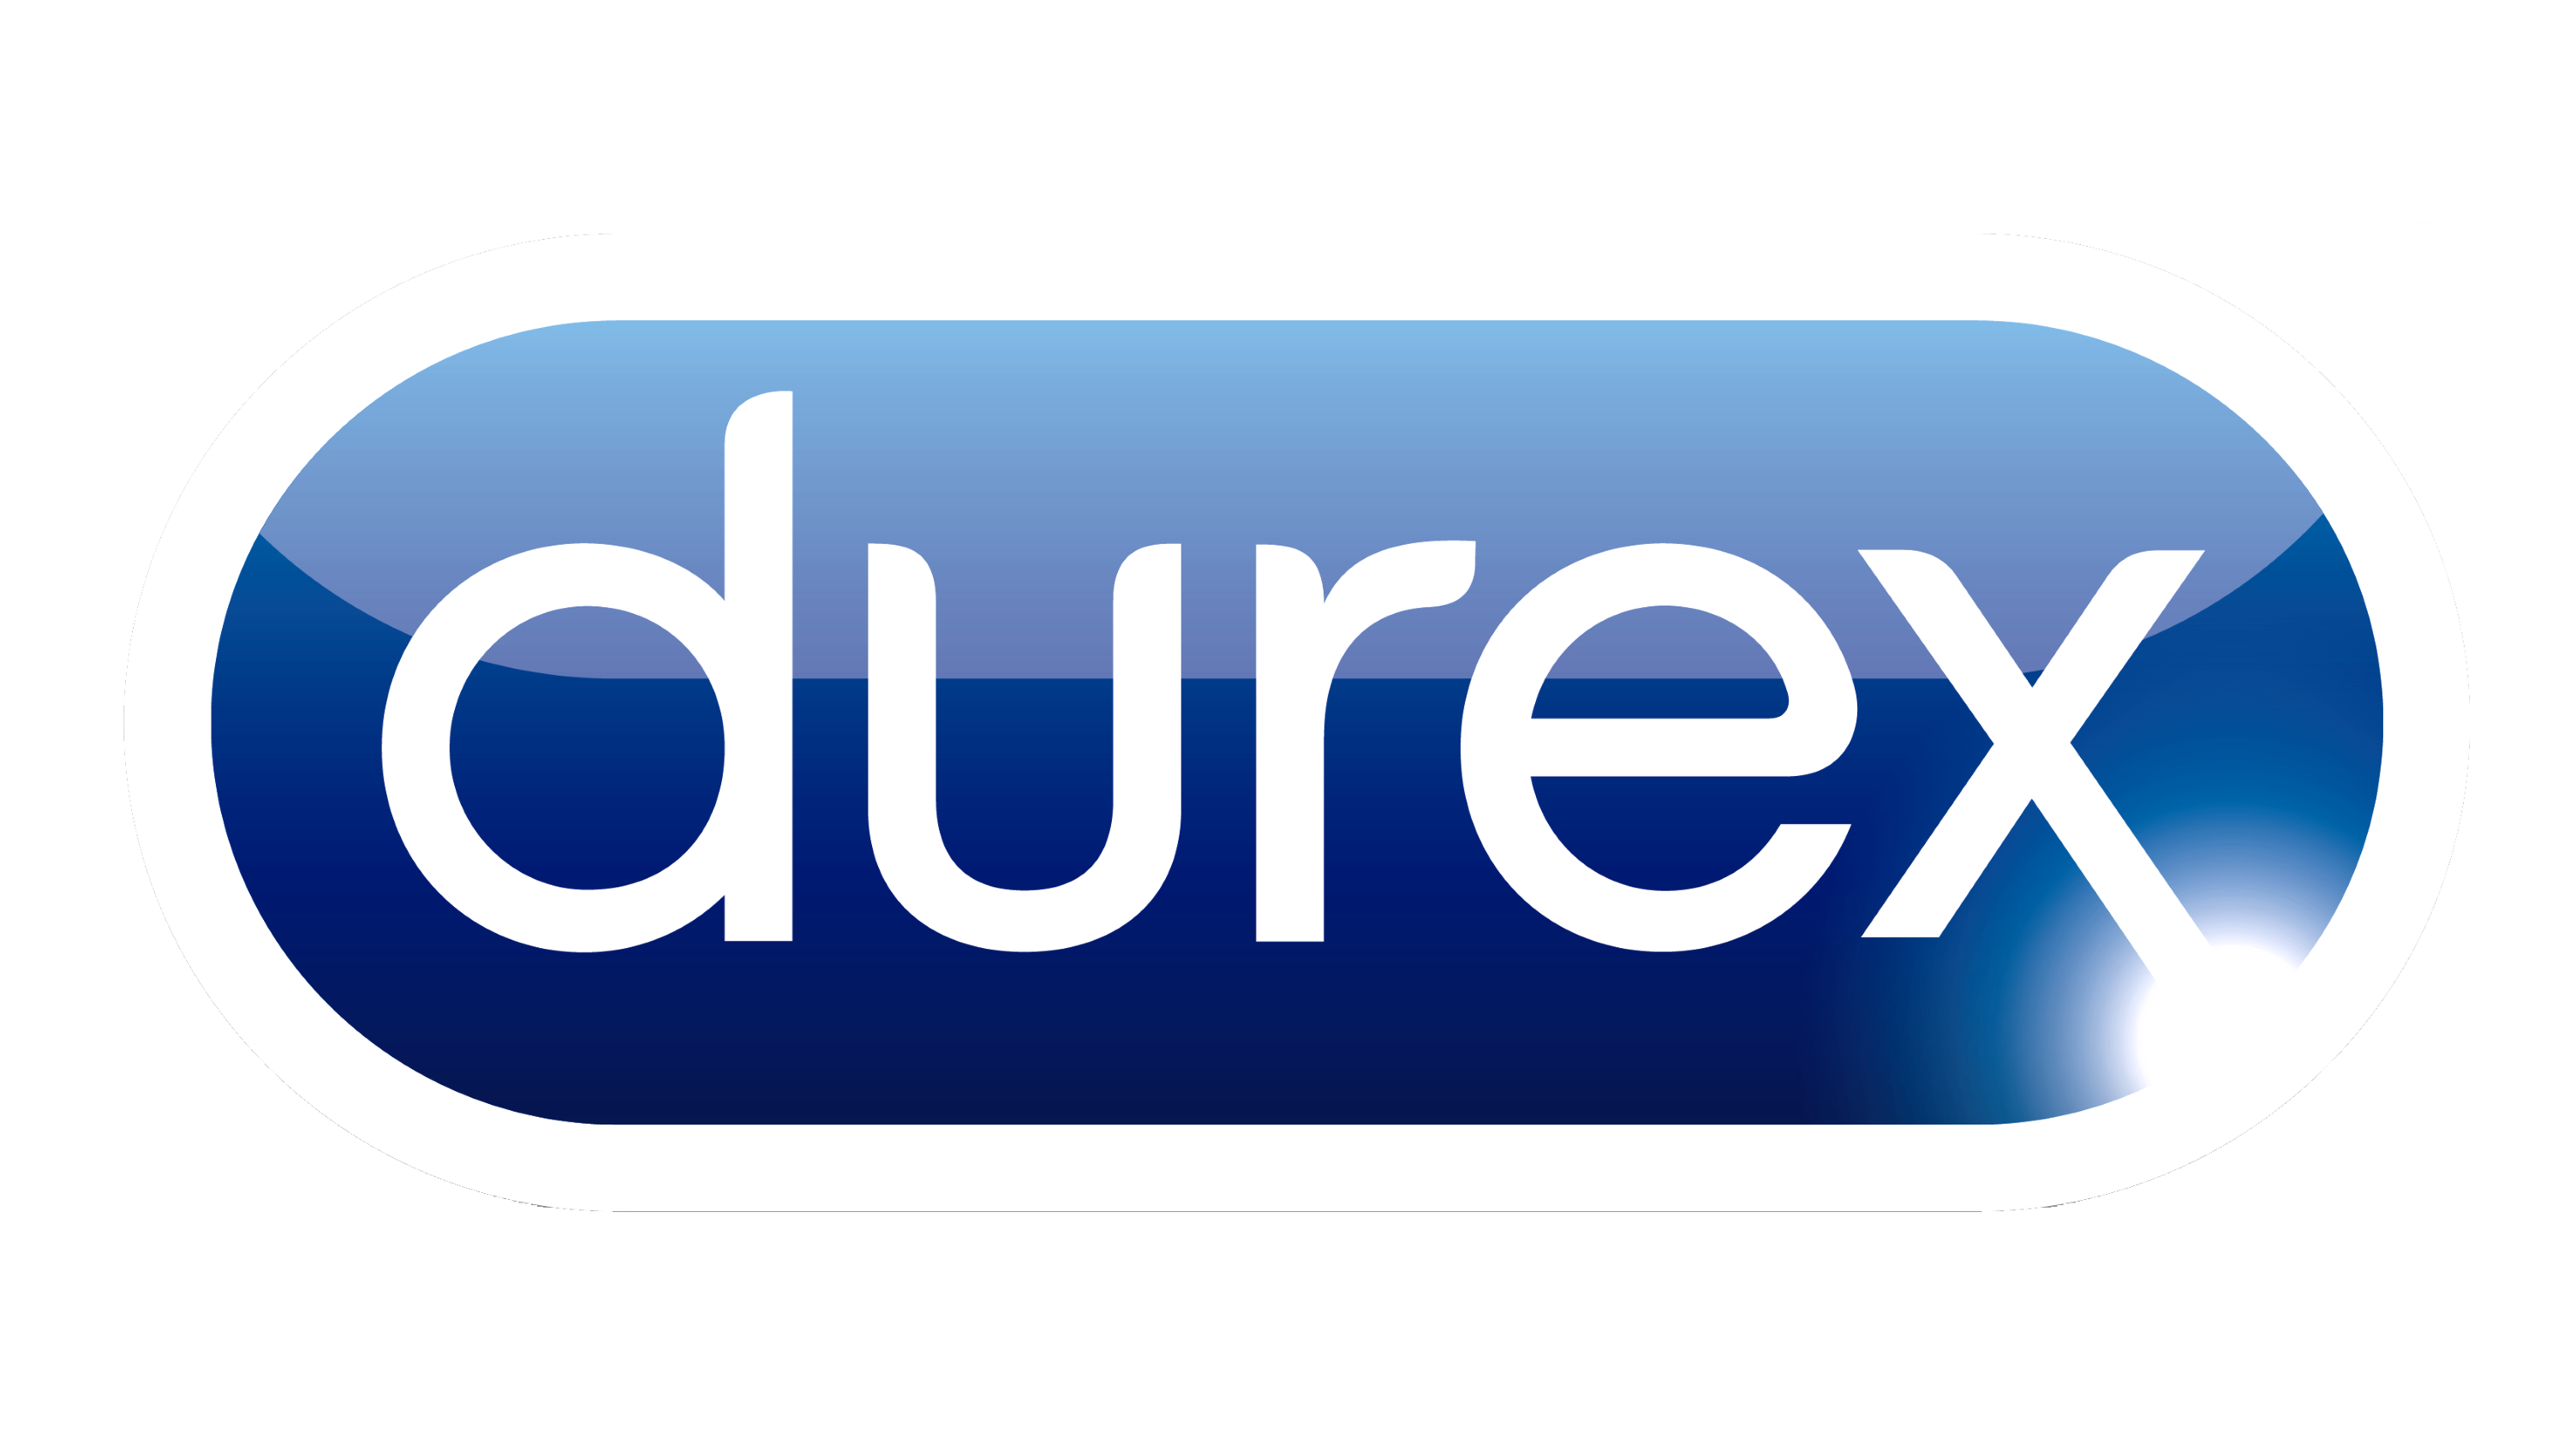 Durex logo, logotype